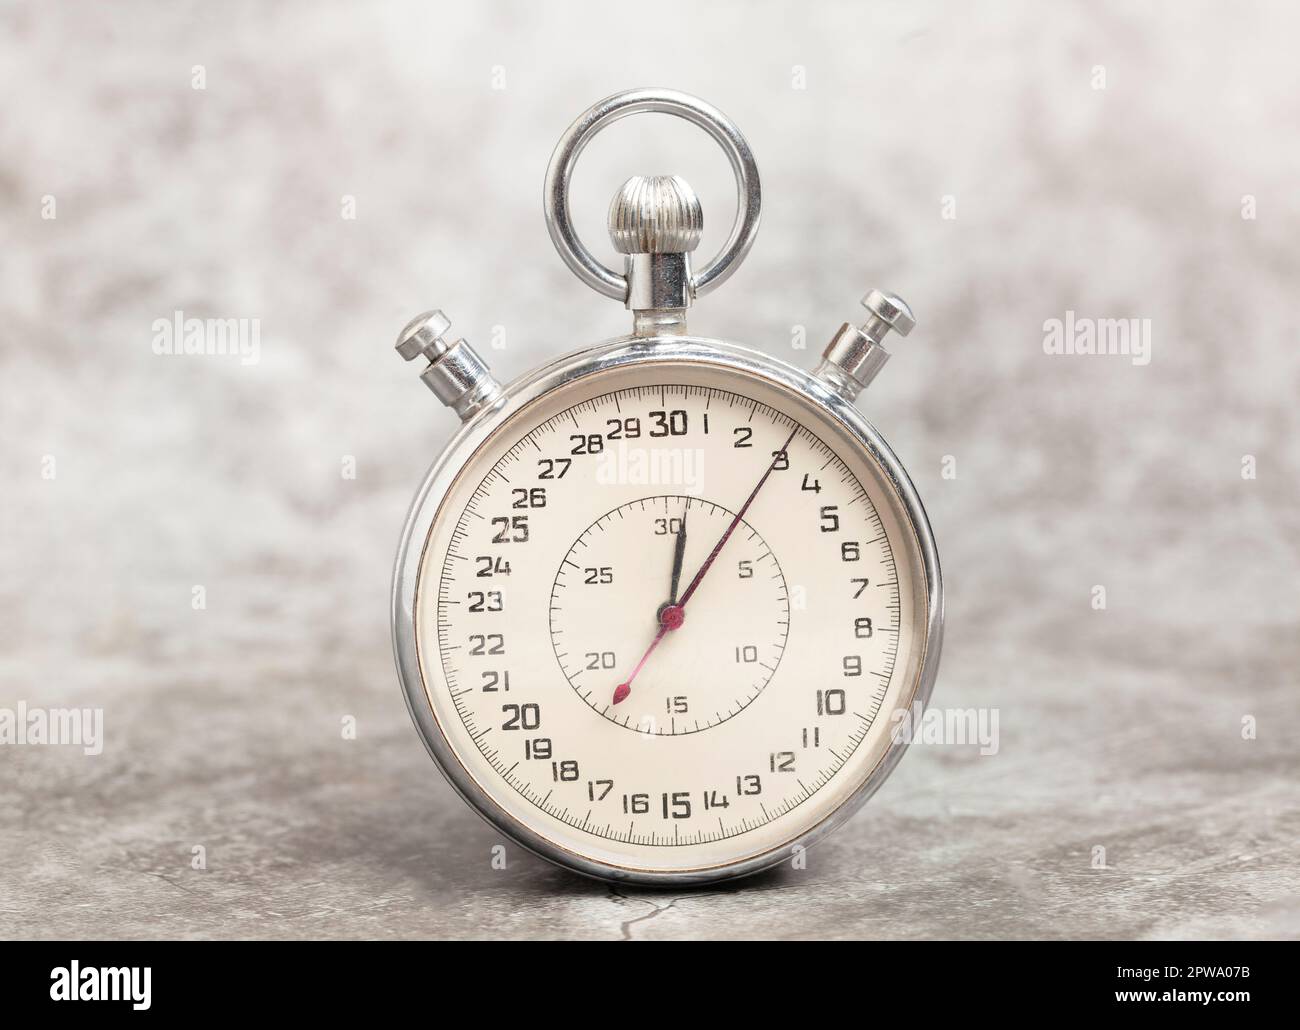 Alte Stoppuhr auf grauem Hintergrund Stockfotografie - Alamy